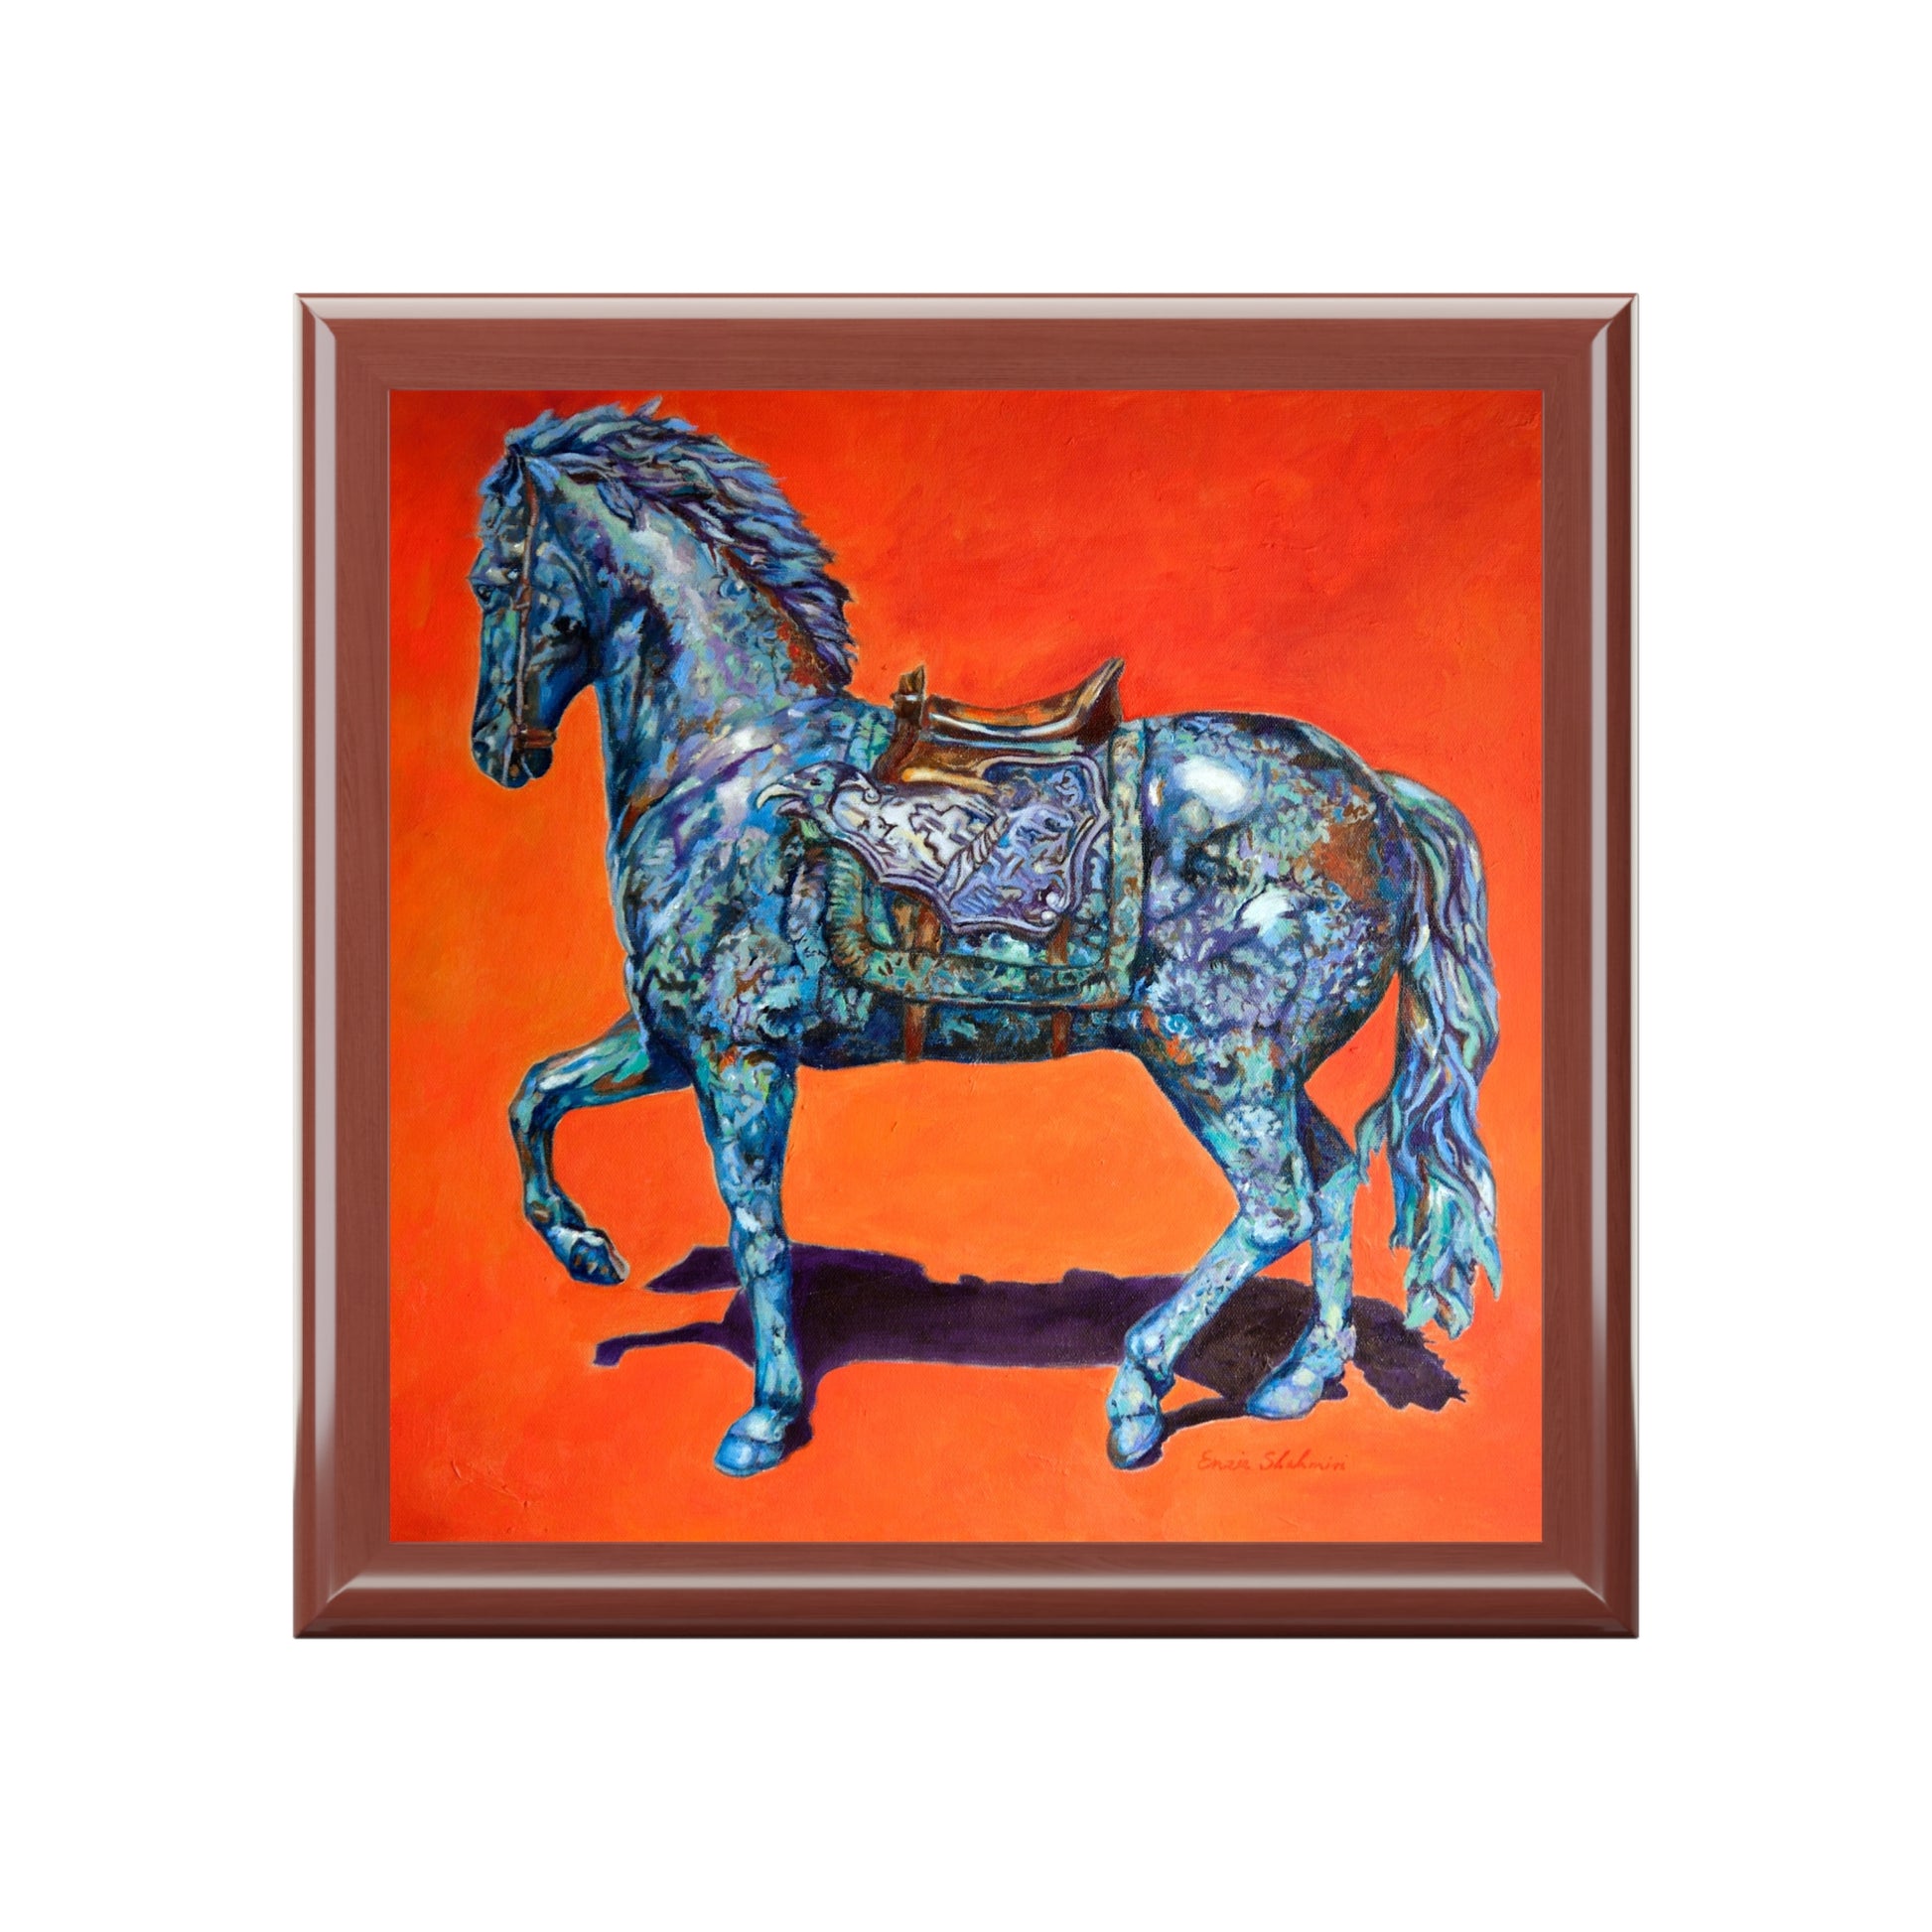 Keepsake/Jewelry Box - Indigo Horse - Wood Lacquer Box